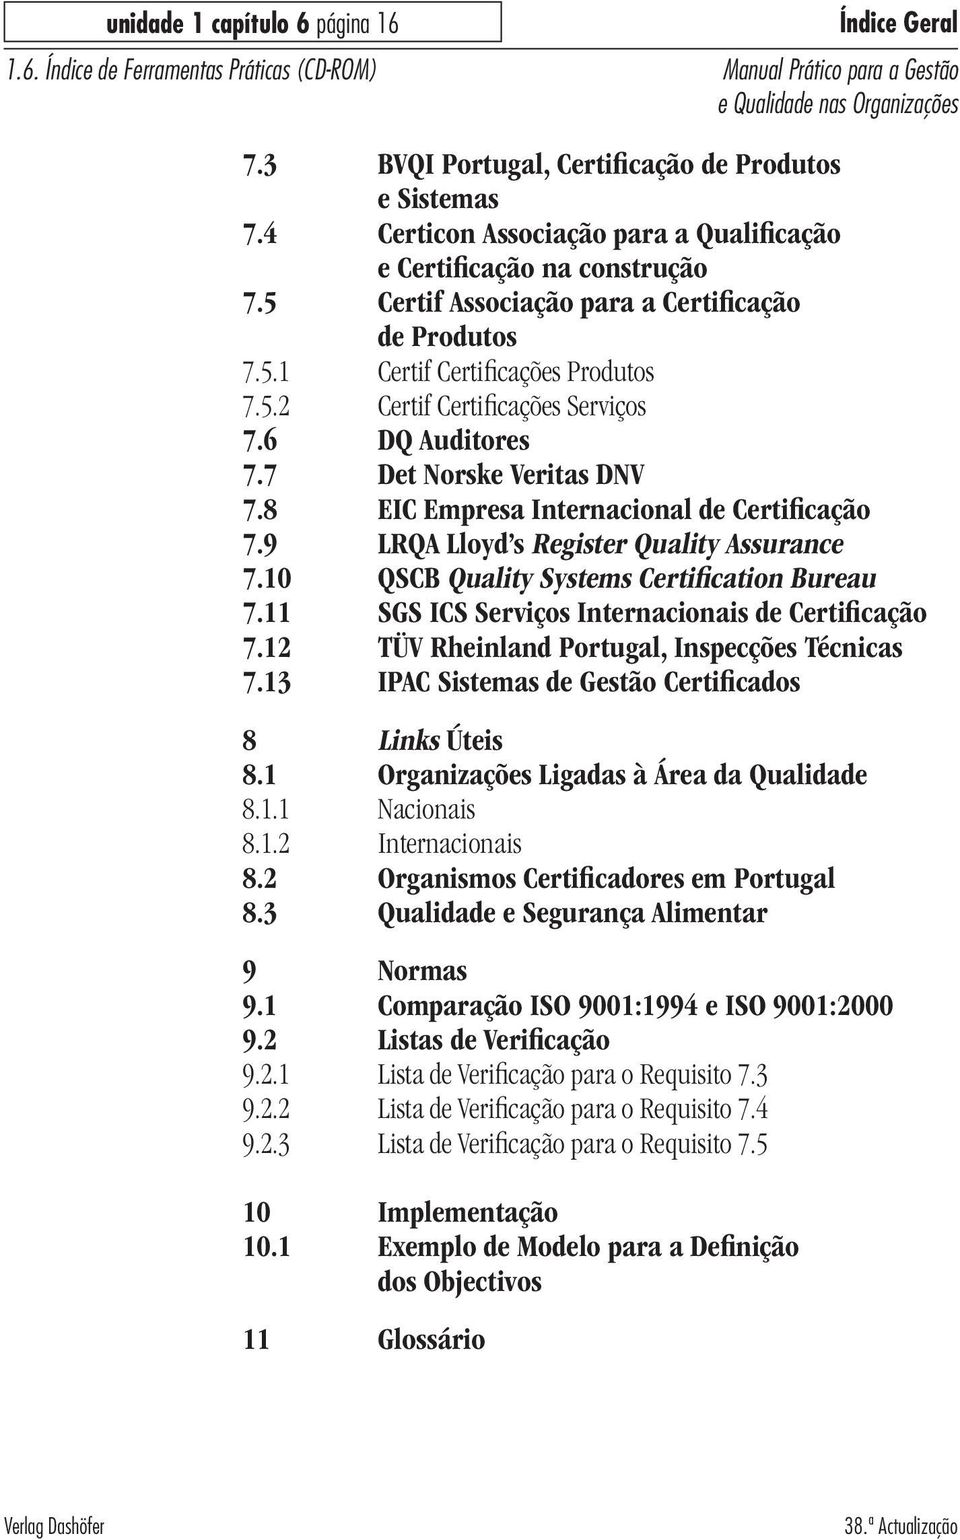 8 EIC Empresa Internacional de Certificação 7.9 LRQA Lloyd s Register Quality Assurance 7.10 QSCB Quality Systems Certification Bureau 7.11 SGS ICS Serviços Internacionais de Certificação 7.